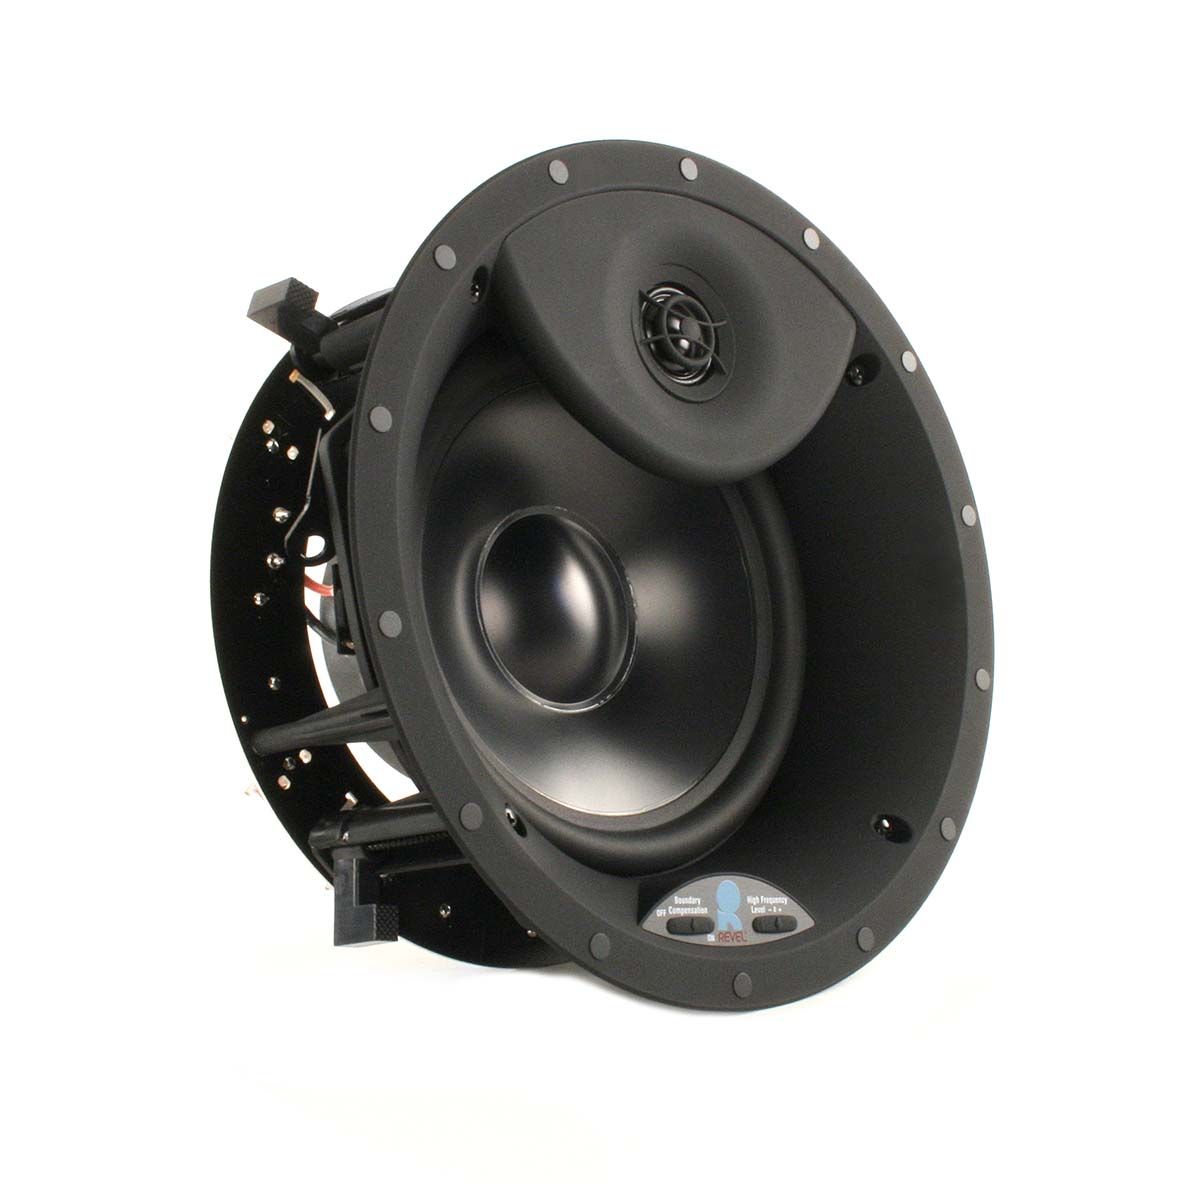 Revel C783 In-Ceiling Speaker, front angle